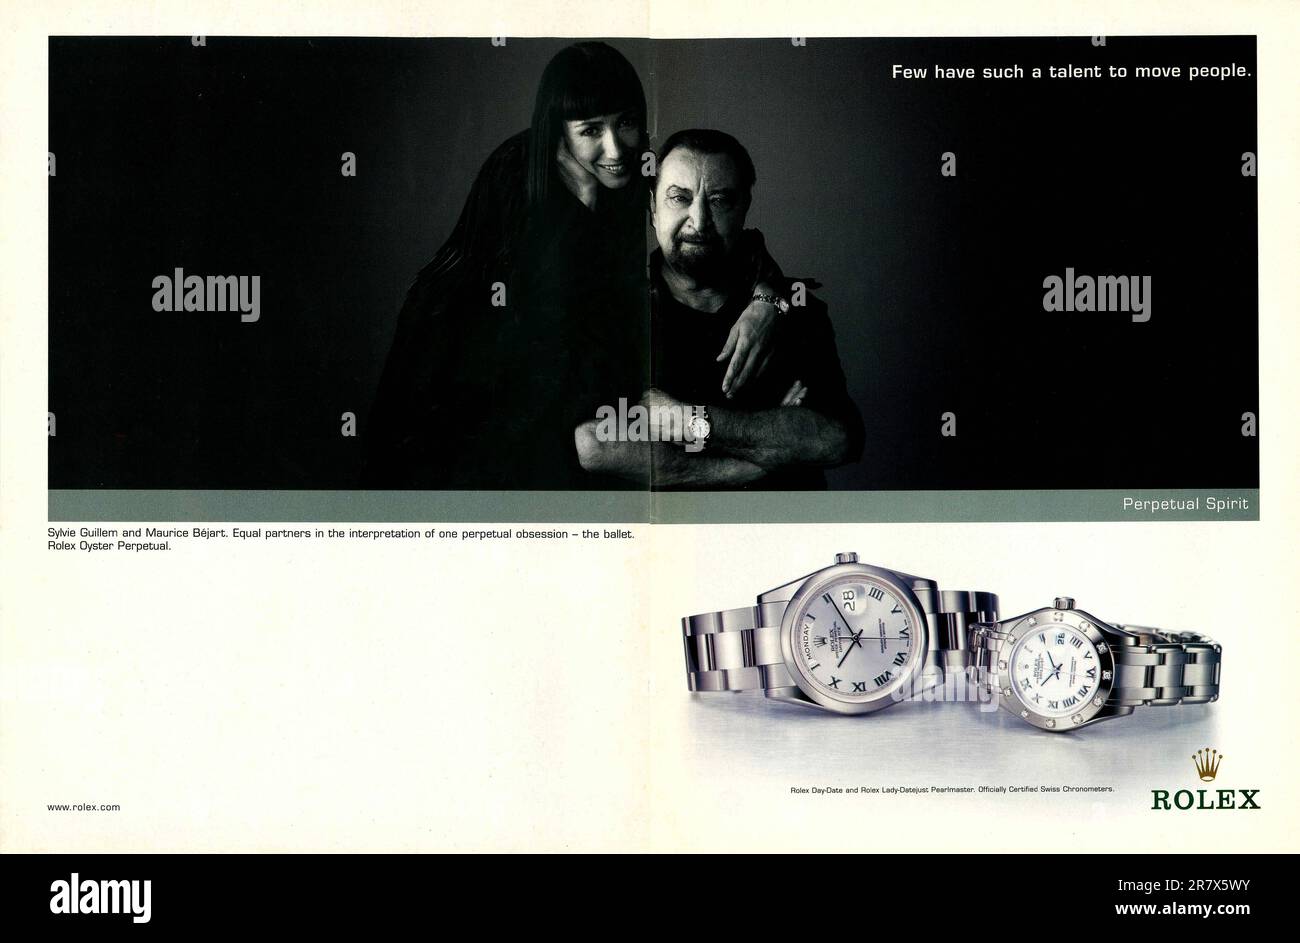 Rolex Oyster Perpetual Advert mit Sylvie Guillem und Maurice Béjart französischen Tänzern, in einer Zeitschrift 2001. Rolex Day-Date und Lady-Datejust Pearlmaster Stockfoto